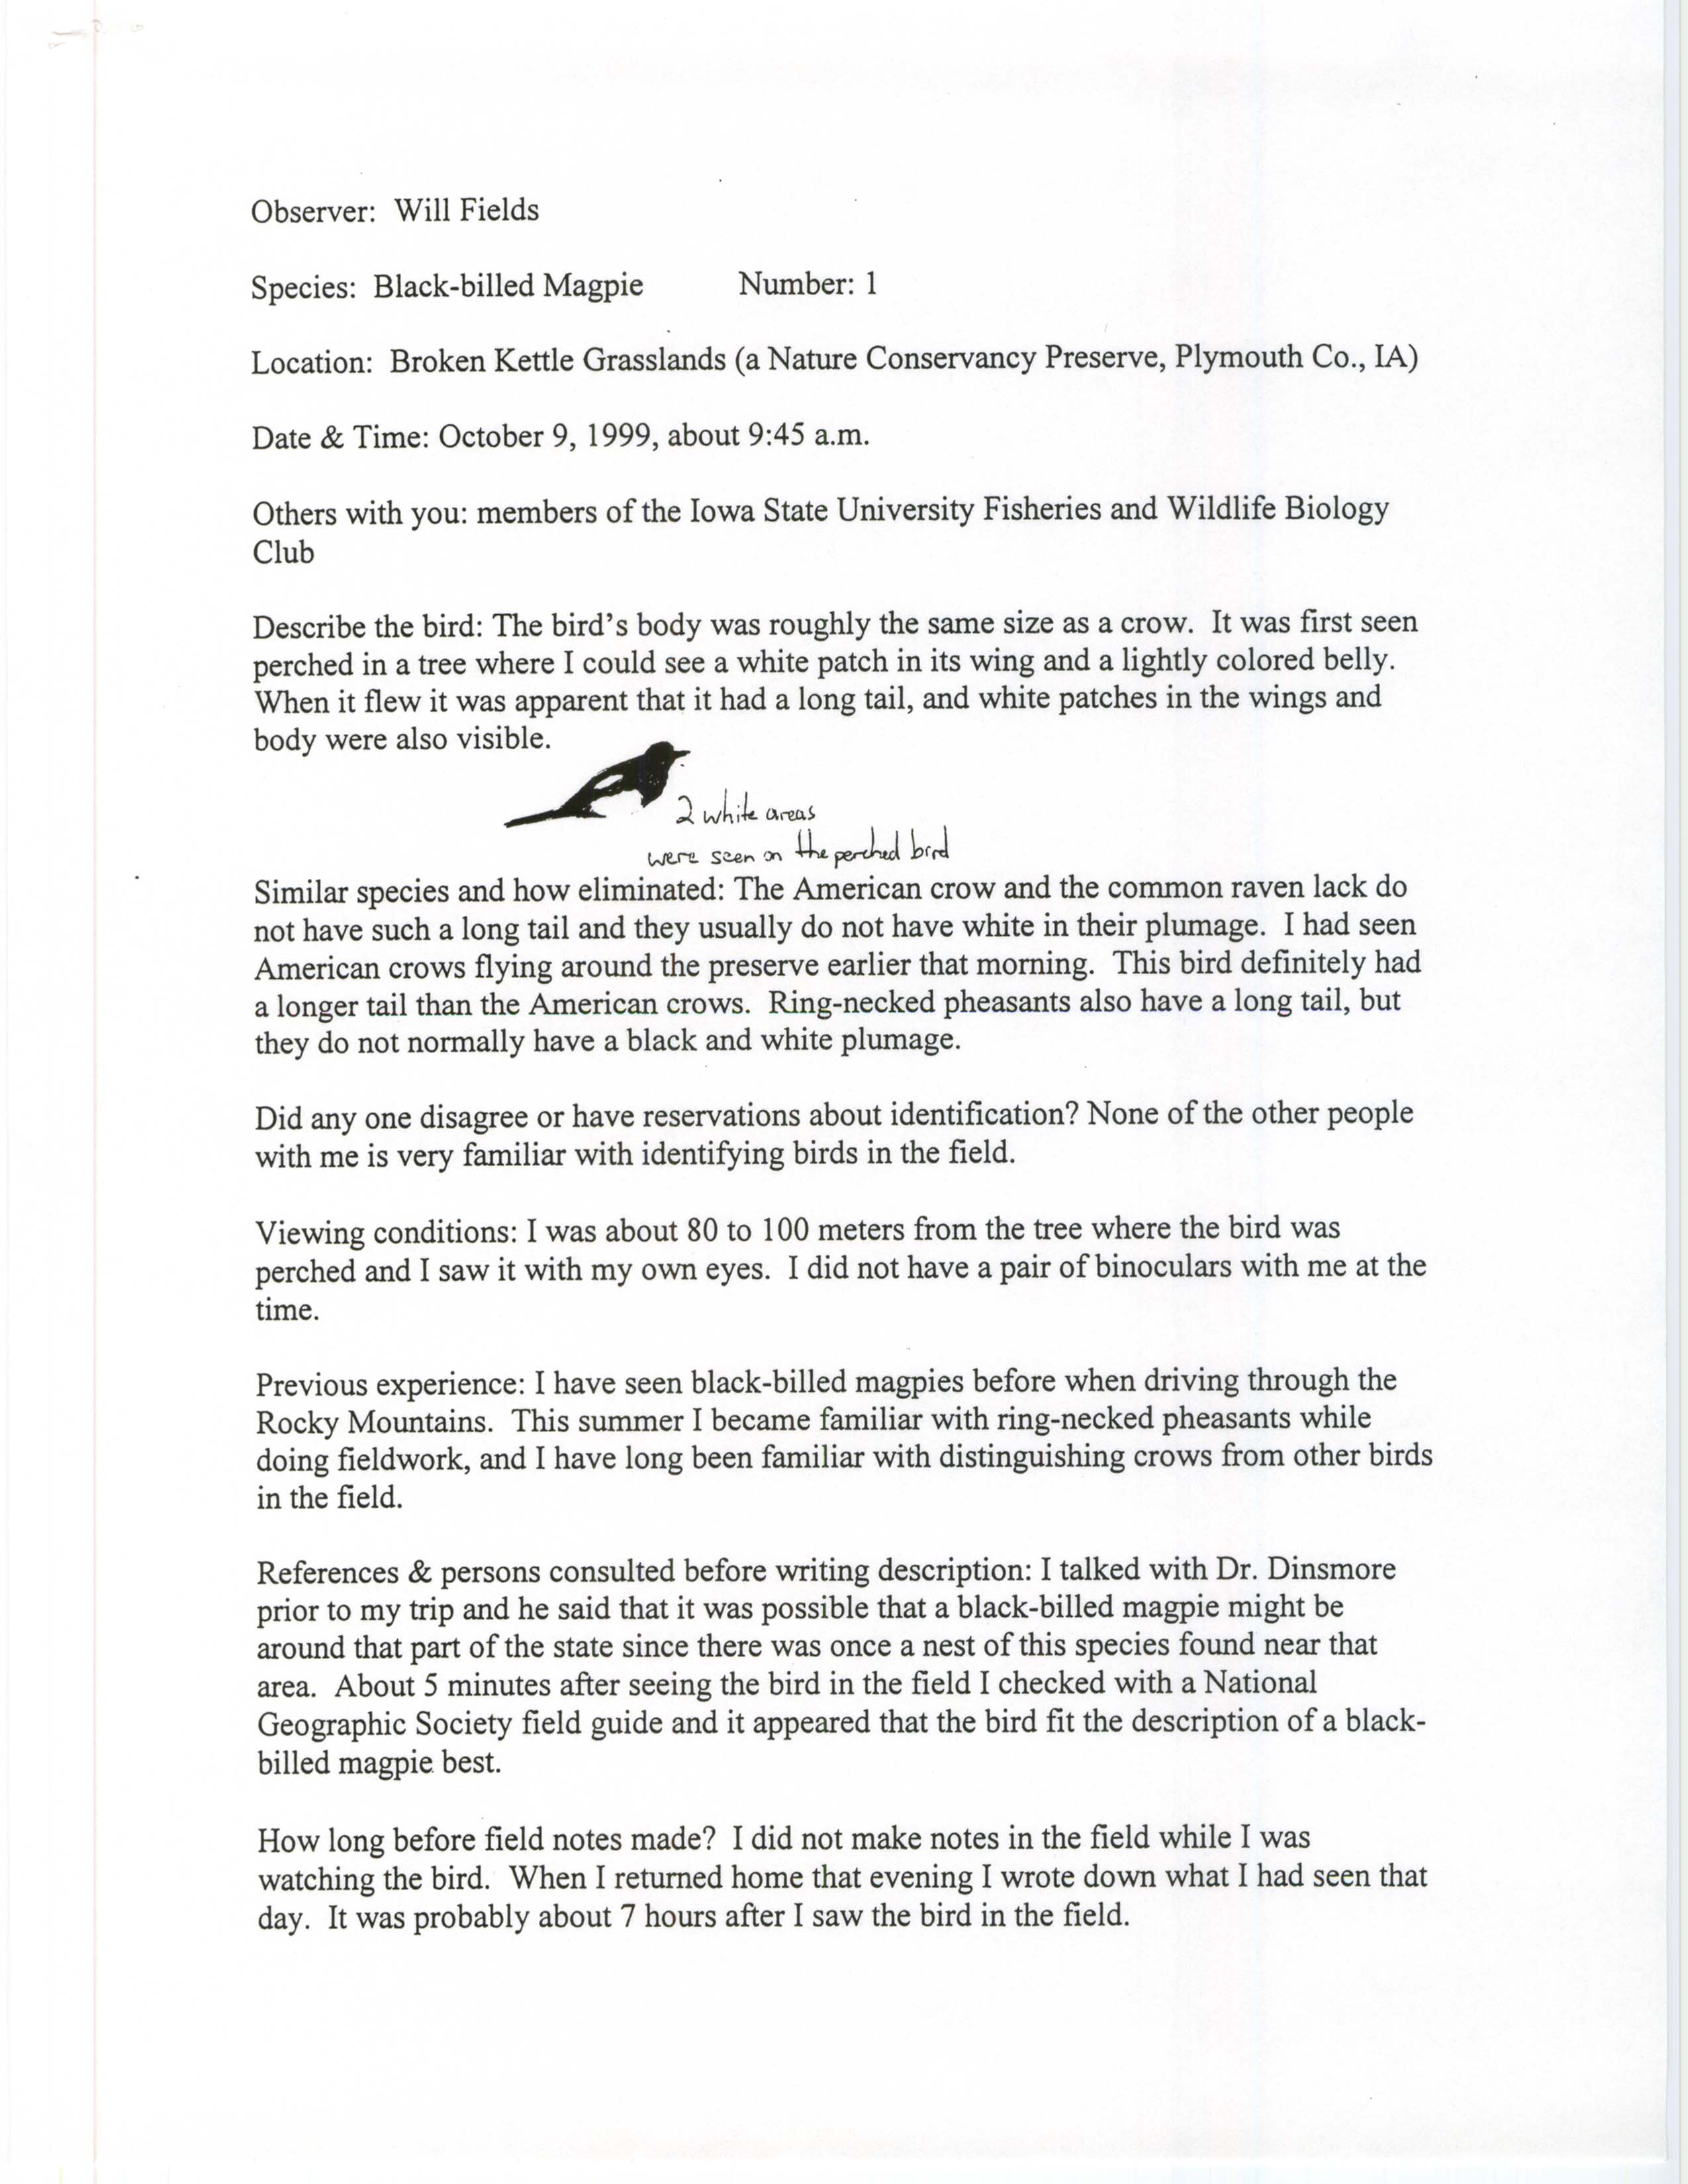 Rare bird documentation form for Black-billed Magpie at Broken Kettle Grasslands Preserve, 1999